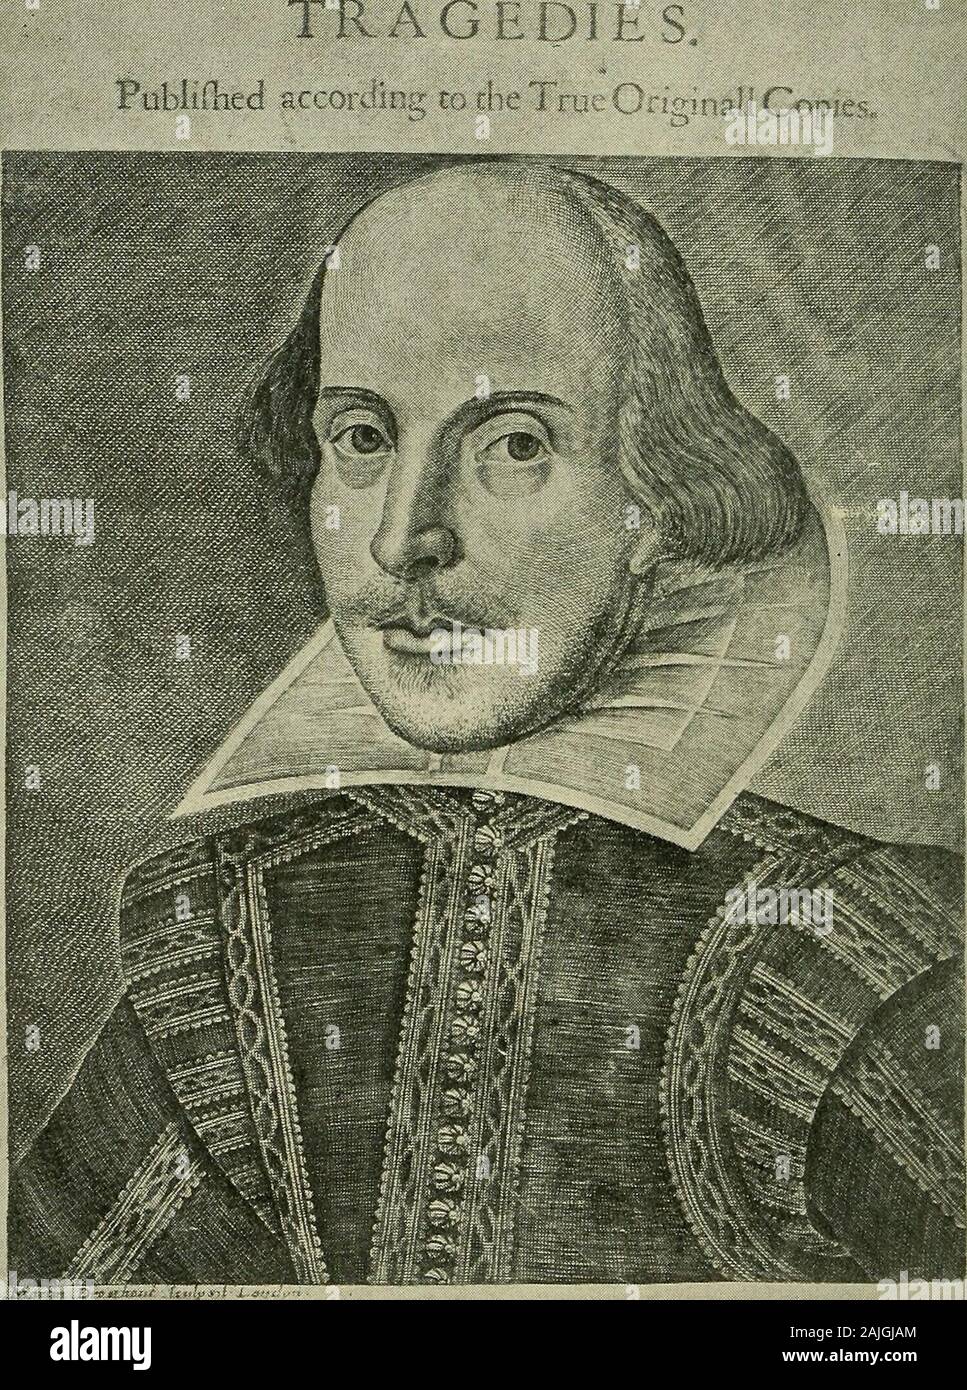 Un'introduzione a Shakespeare . IVmtedby Ifaaclaggard^aod Ed.Bioiinr, i6ti FRONTESPIZIO DEL PRIMO FOLIO, 1623Il primo raccolto edizione di Shakespeare gioca(dall'esemplare nella Biblioteca Pubblica di New York) INTRODUZIONE TOSHAKESPEARE DA H: n: maccracken, ph.d. F. E. PIERCE, Ph.D. E W. H. DURHAM, Ph.D. Del Dipartimento di letteratura inglese in Sheffield Scuola SCIENTIFICA DEL RACCONTO UNIVERSITÀ LA SOCIETÀ MAGMILLAN1910 AU diritti riservati Shi?. !•;? COPYKIGHT, 1910, dalla società MAOMILLAIf. Impostare e electrotyped. Pubblicato a settembre, 1910, /introductiontosh01macc Foto Stock